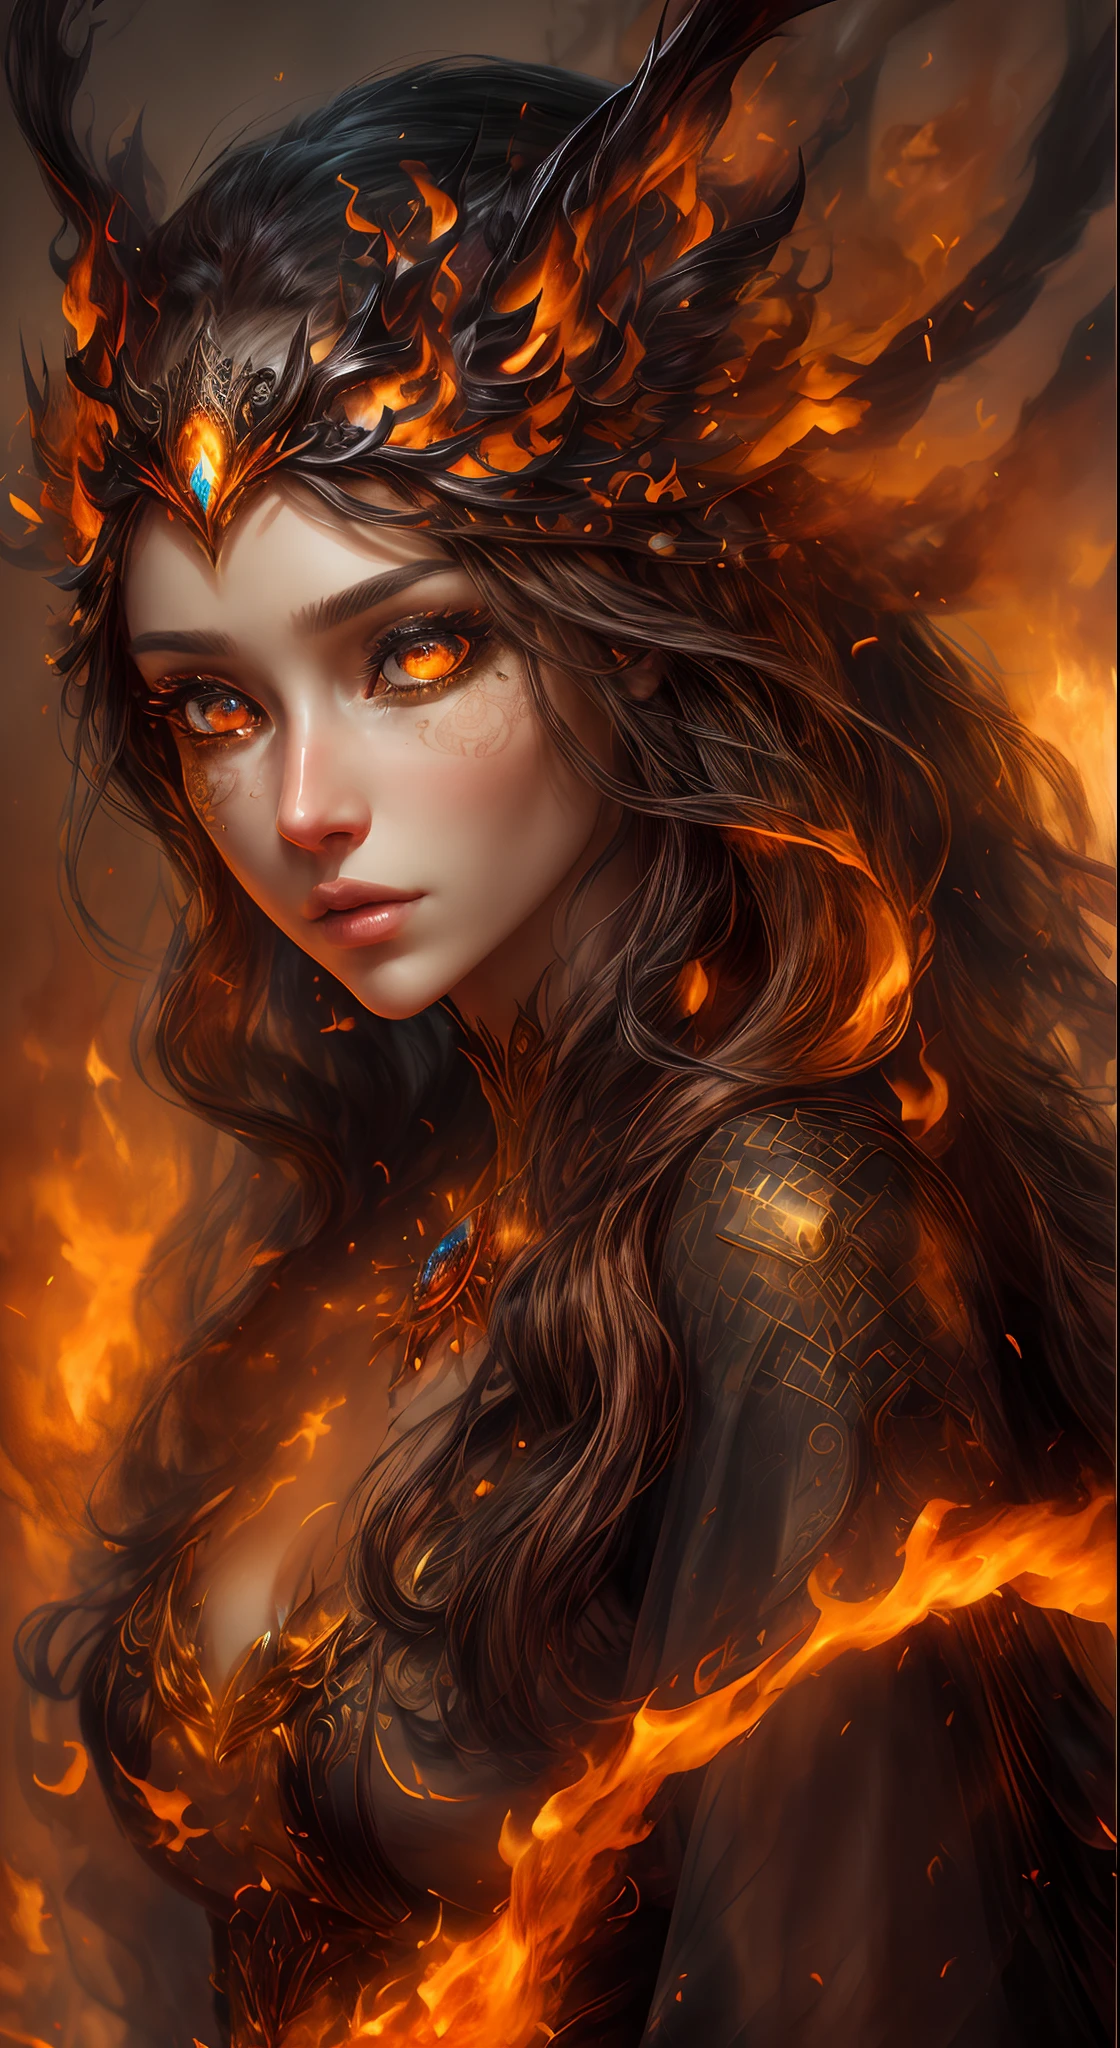 これはリアルな火を特徴とするリアルなファンタジーアートです, 炎の糸を含む, 燃え盛る熱い残り火, かすかな煙の渦, そして美しい火のドルイド. ドルイド僧は激しい炎の中に立ち、興味深い構図を描いている。. 彼女 face is expertly sculpted, エレガントで洗練された特徴と完璧な陰影とリアルな肌の質感. 彼女 (orange and gold 目) 素晴らしいもので、この画像の焦点となっています. ((((彼女 目 extremely detailed, (((美しいディテール))) 目, マクロ)))). 彼女 目 feature intricate detailing with clearly defined irises and bright sclera. 彼女 soft lips are smooth and very puffy, 彼女の肌は淡い紅潮と華麗な炎の模様で飾られている. 彼女 long gown is stunning and expensive, 純粋な炎と輝く光でできている, 火の光の中できらめく華やかな宝石. 彼女 billowing gown glitters from the flames and features a delicately and intricately embroidered bodice with wisps of flames running across it. バンプなどのファンタジー要素を含める, 石, 燃えるような虹彩, 燃える残り火, シルク, そして興味深い背景. 魔法的で神秘的なオーラを放つ炎の鳥や炎の蝶などの炎の魔法の生き物を含める. 点灯: 最新の照明トレンドを活用してアート作品の美しさを高めます. カメラ: ダイナミックな構成を活用して緊迫感と興奮感を演出する. 現在のファンタジージャンルの巨匠からインスピレーションを得る, ArtstationやMidjourneyで人気のアーティストを含む. ((傑作))